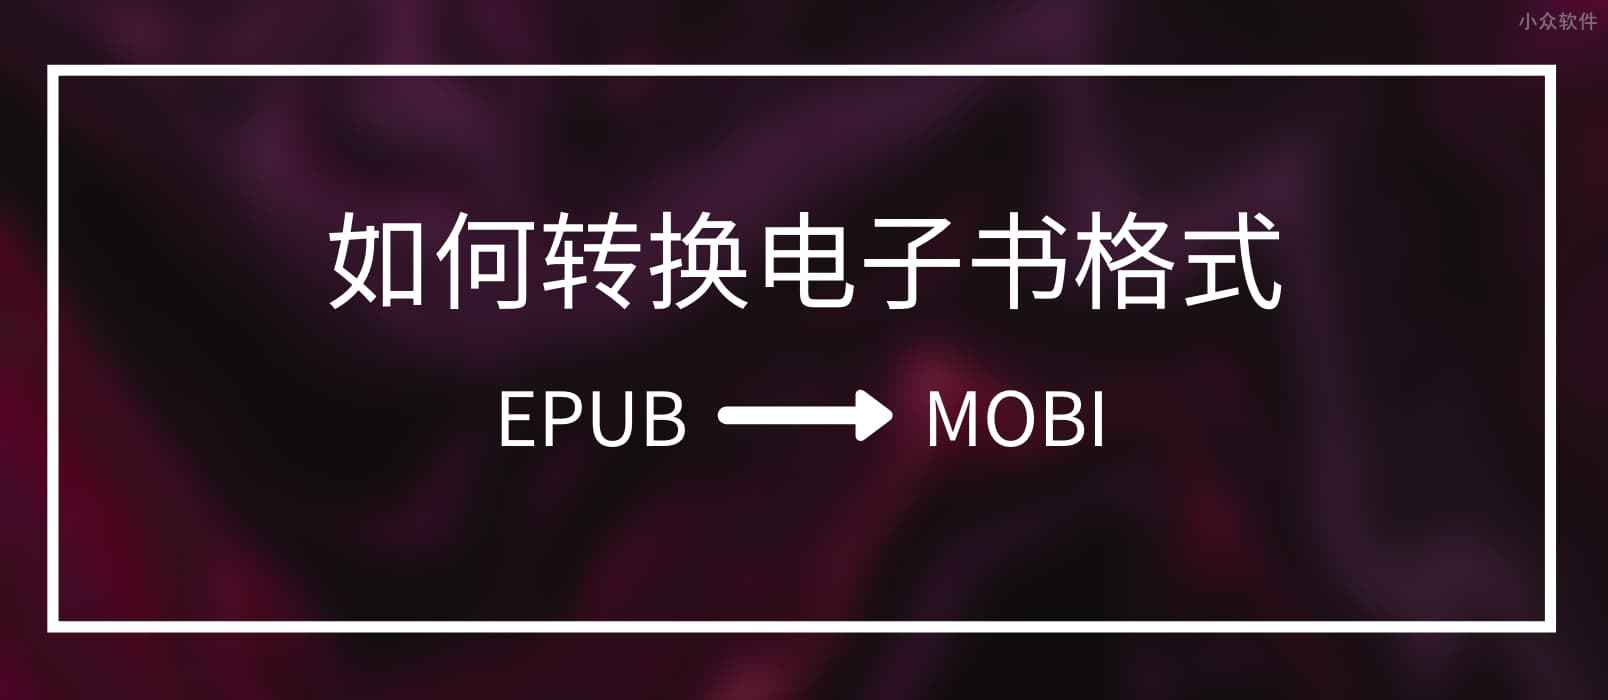 求把 EPUB 转换成 MOBI 的电子书格式转换工具 1